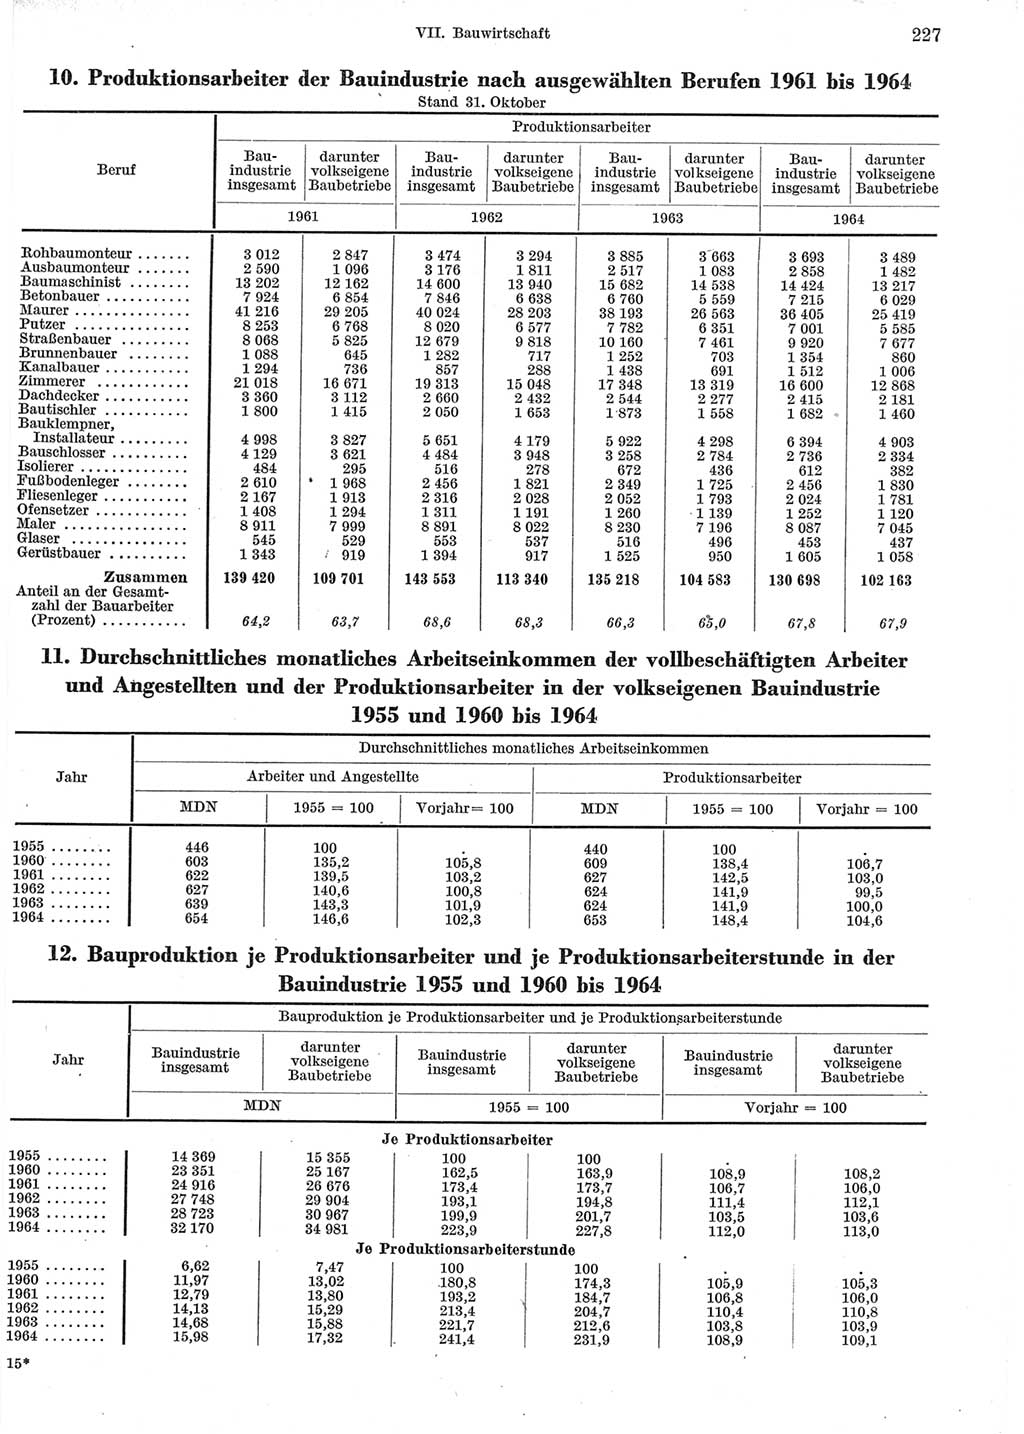 Statistisches Jahrbuch der Deutschen Demokratischen Republik (DDR) 1965, Seite 227 (Stat. Jb. DDR 1965, S. 227)